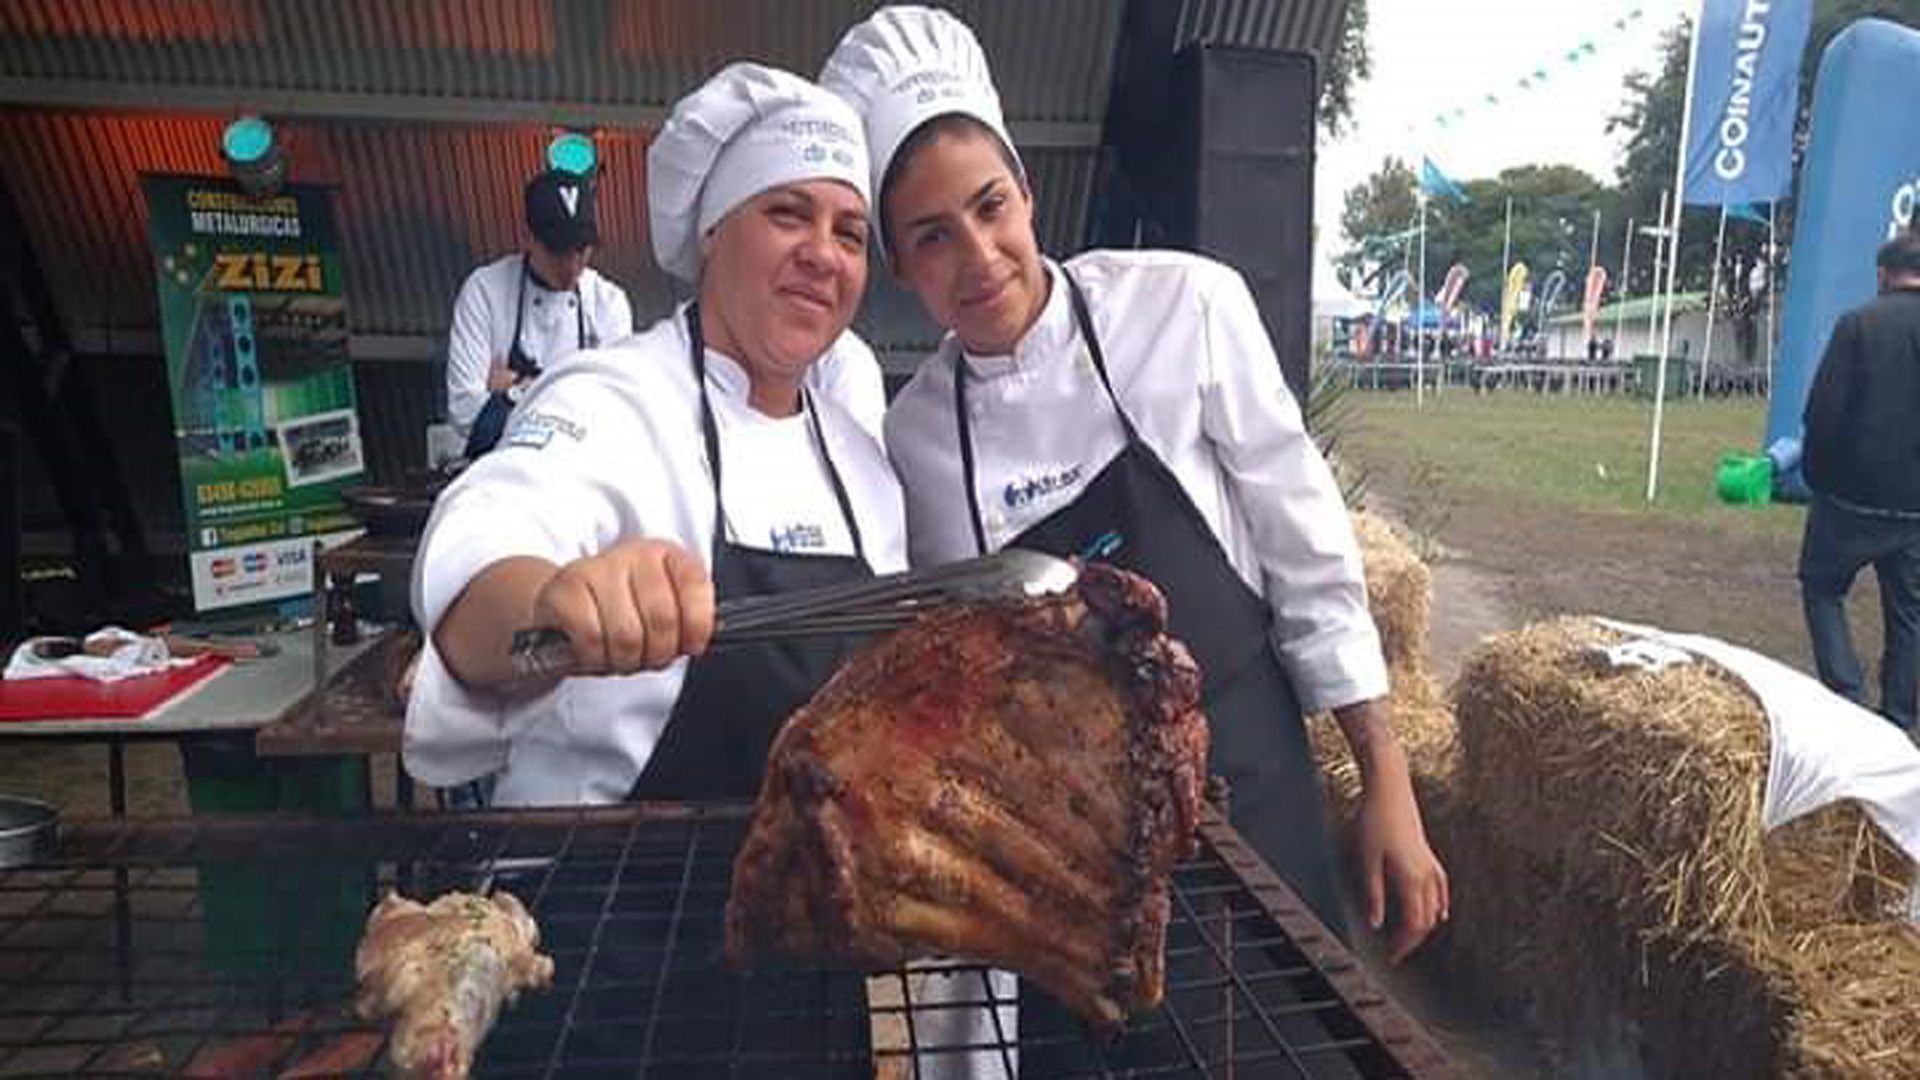 Laura Ferreyra y Maribel Zoccaliz participaron en la final de un concurso de asadores en Santa Fe el mes pasado